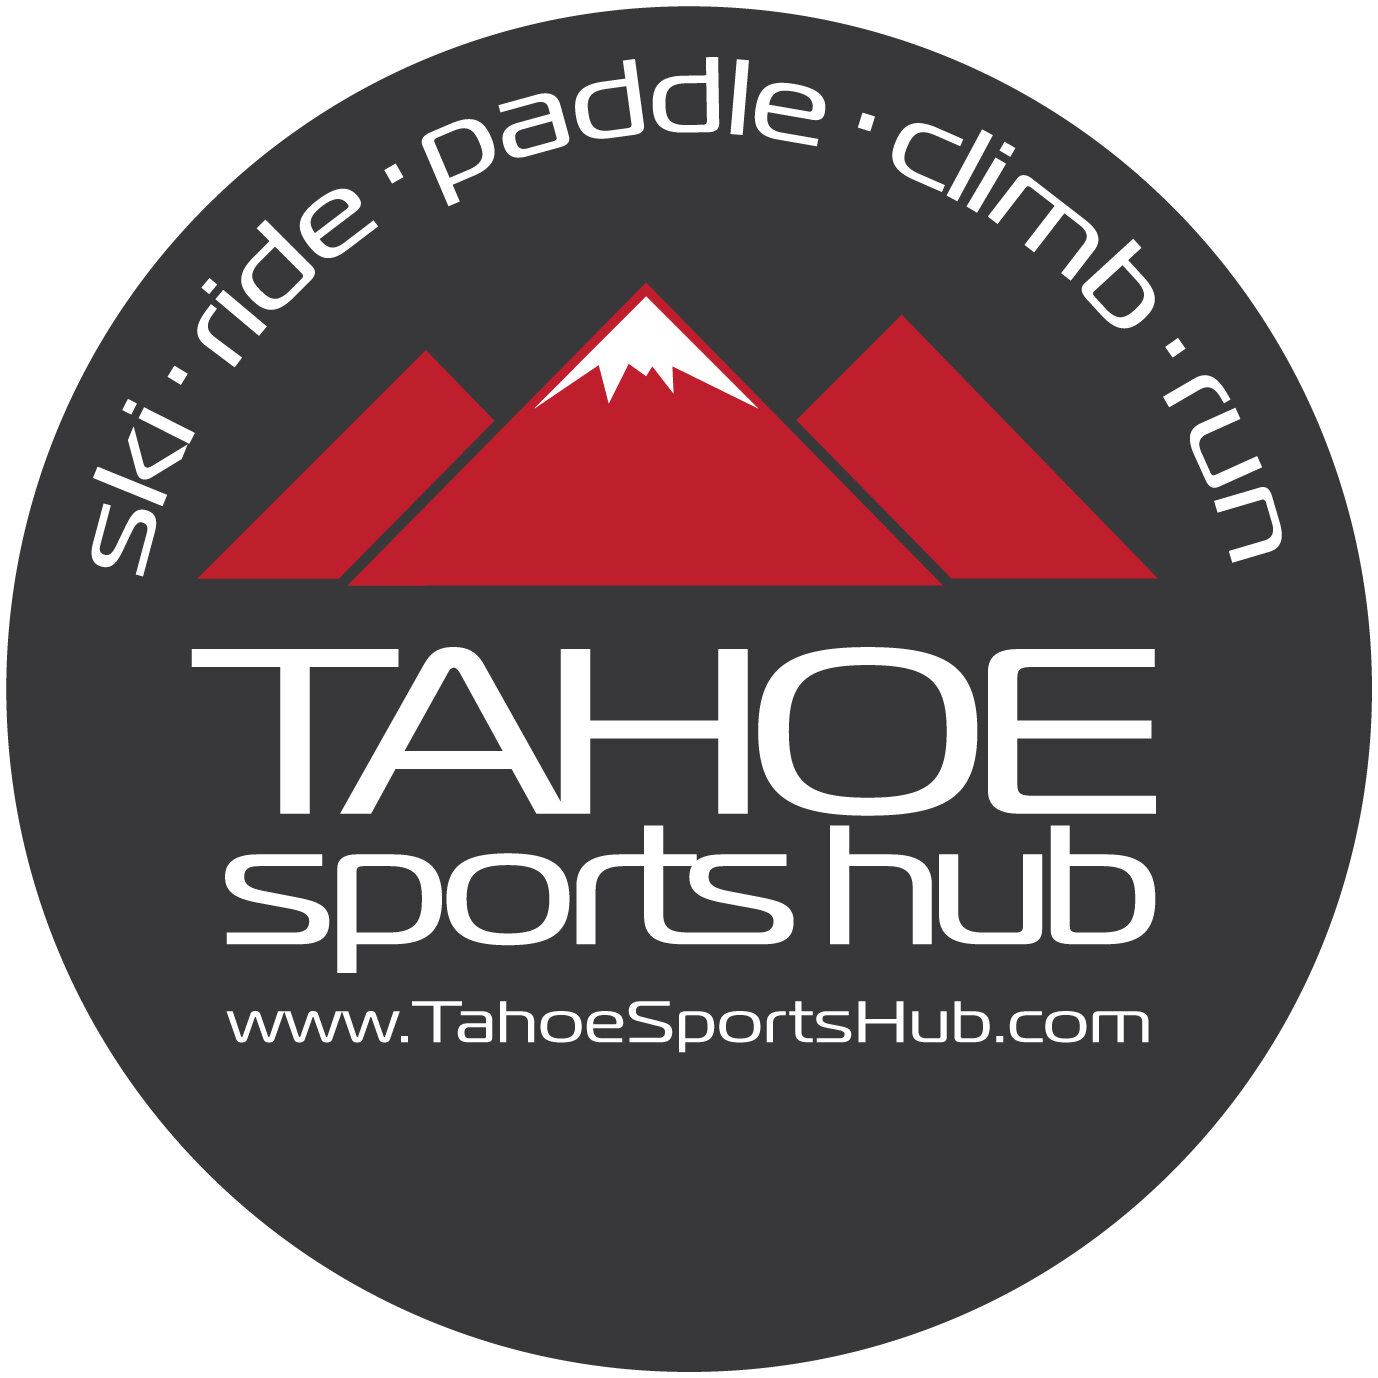 www.tahoesportshub.com